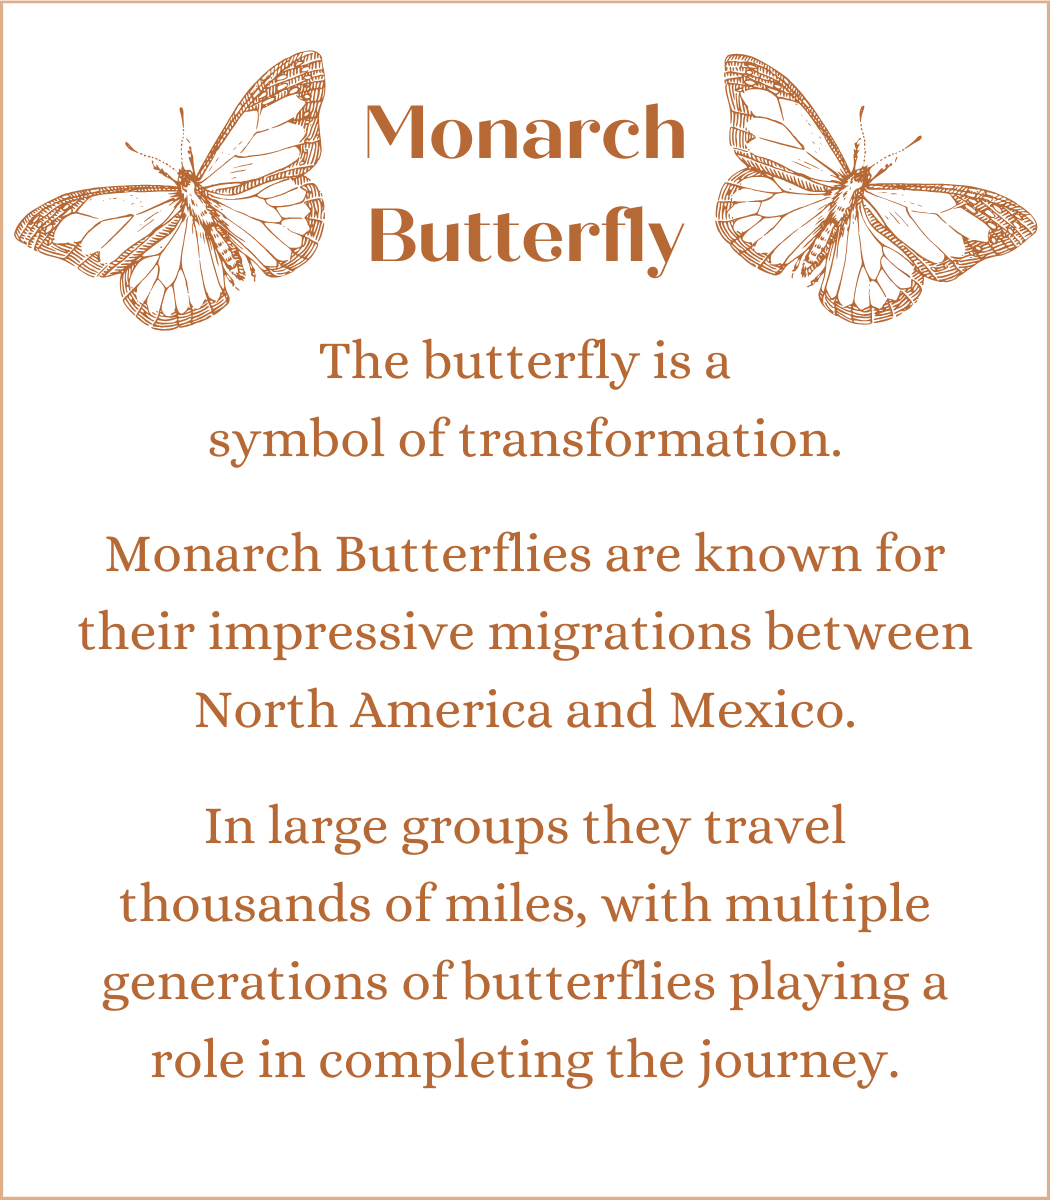 Monarch Butterfly in Freya